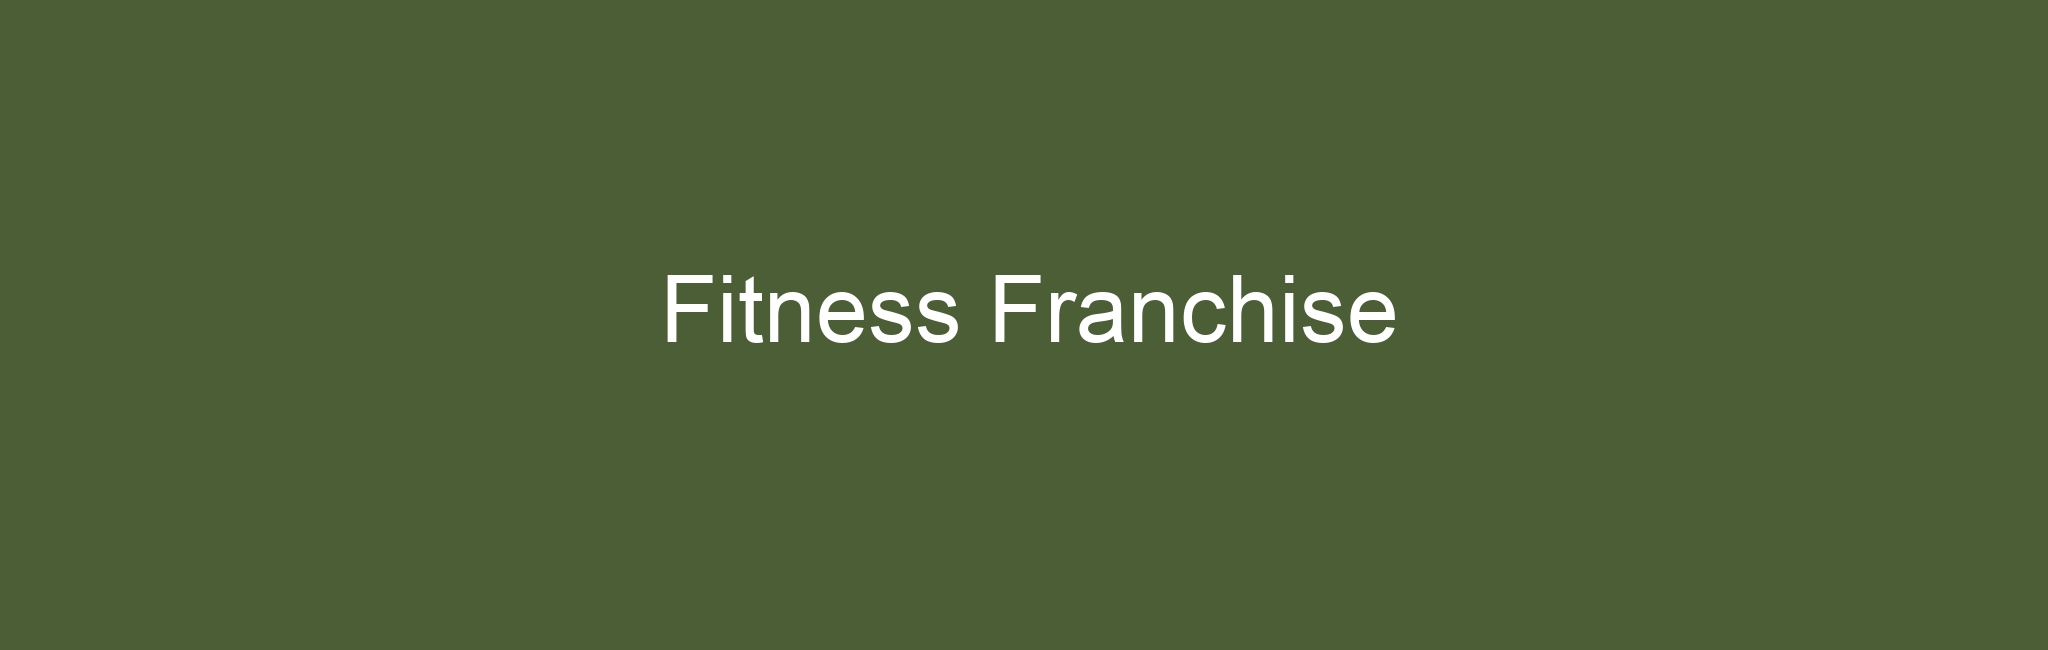 Fitness Franchise